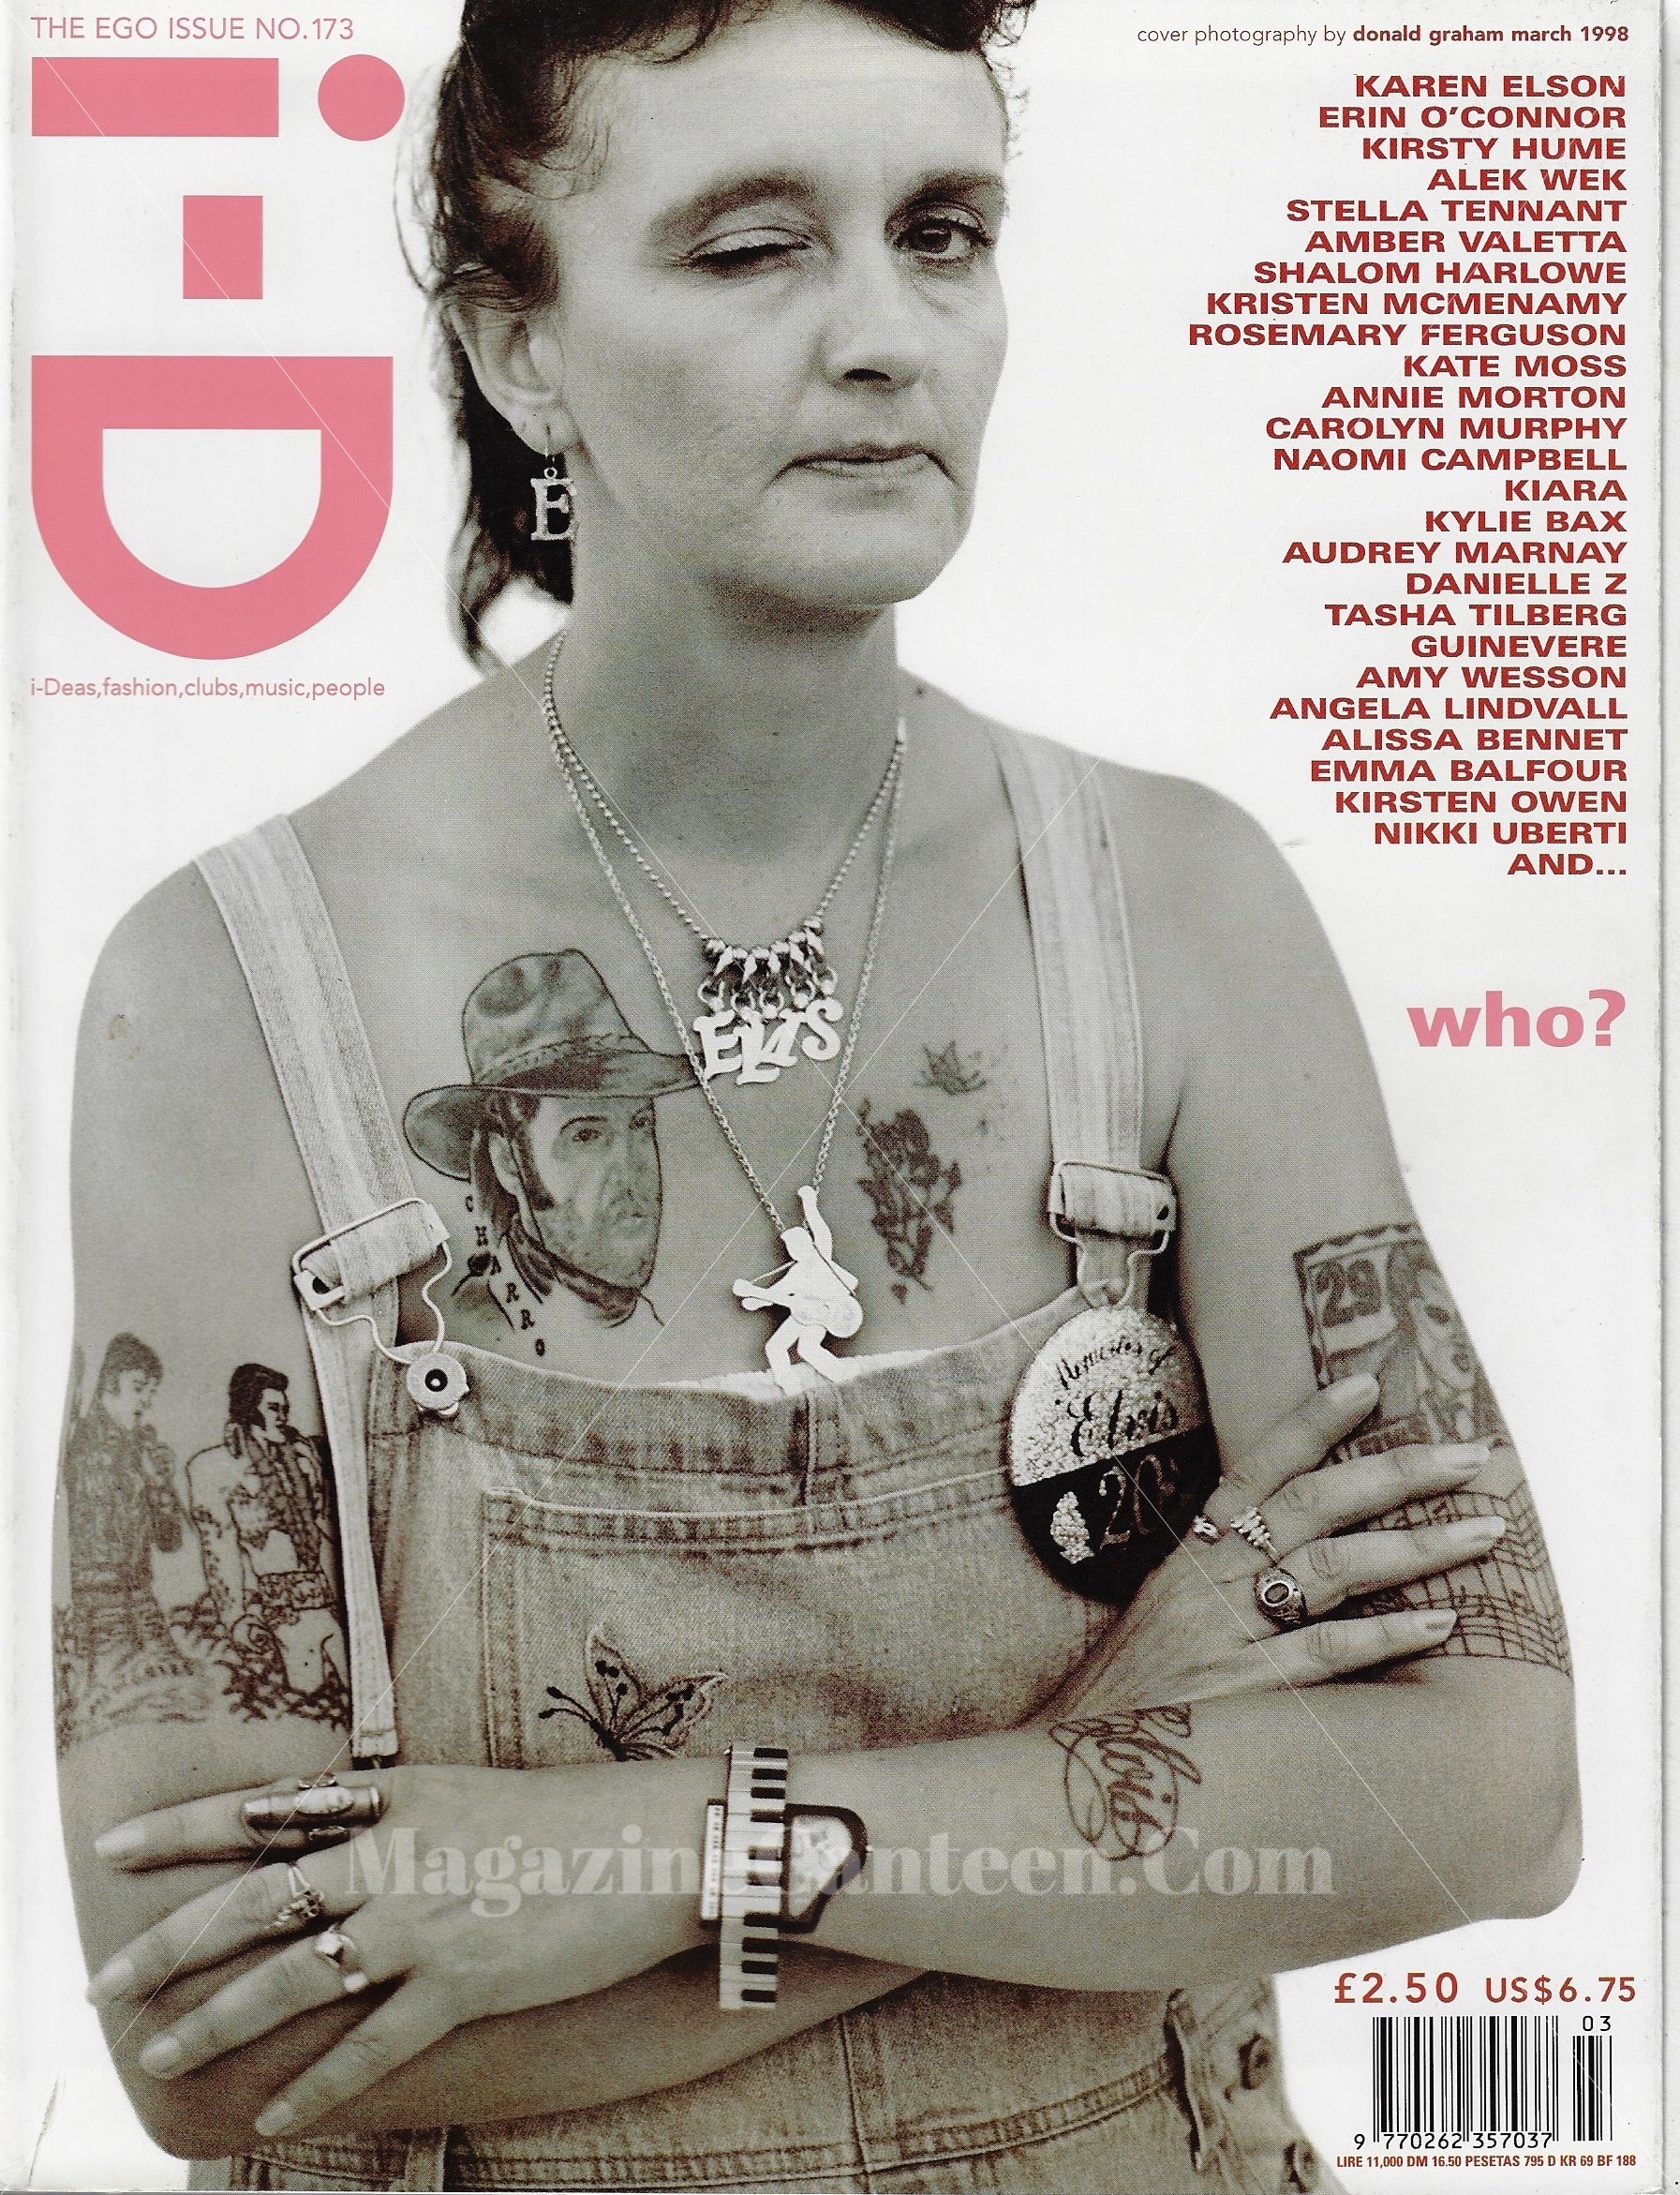 I-D Magazine 173 - The Ego issue 1998